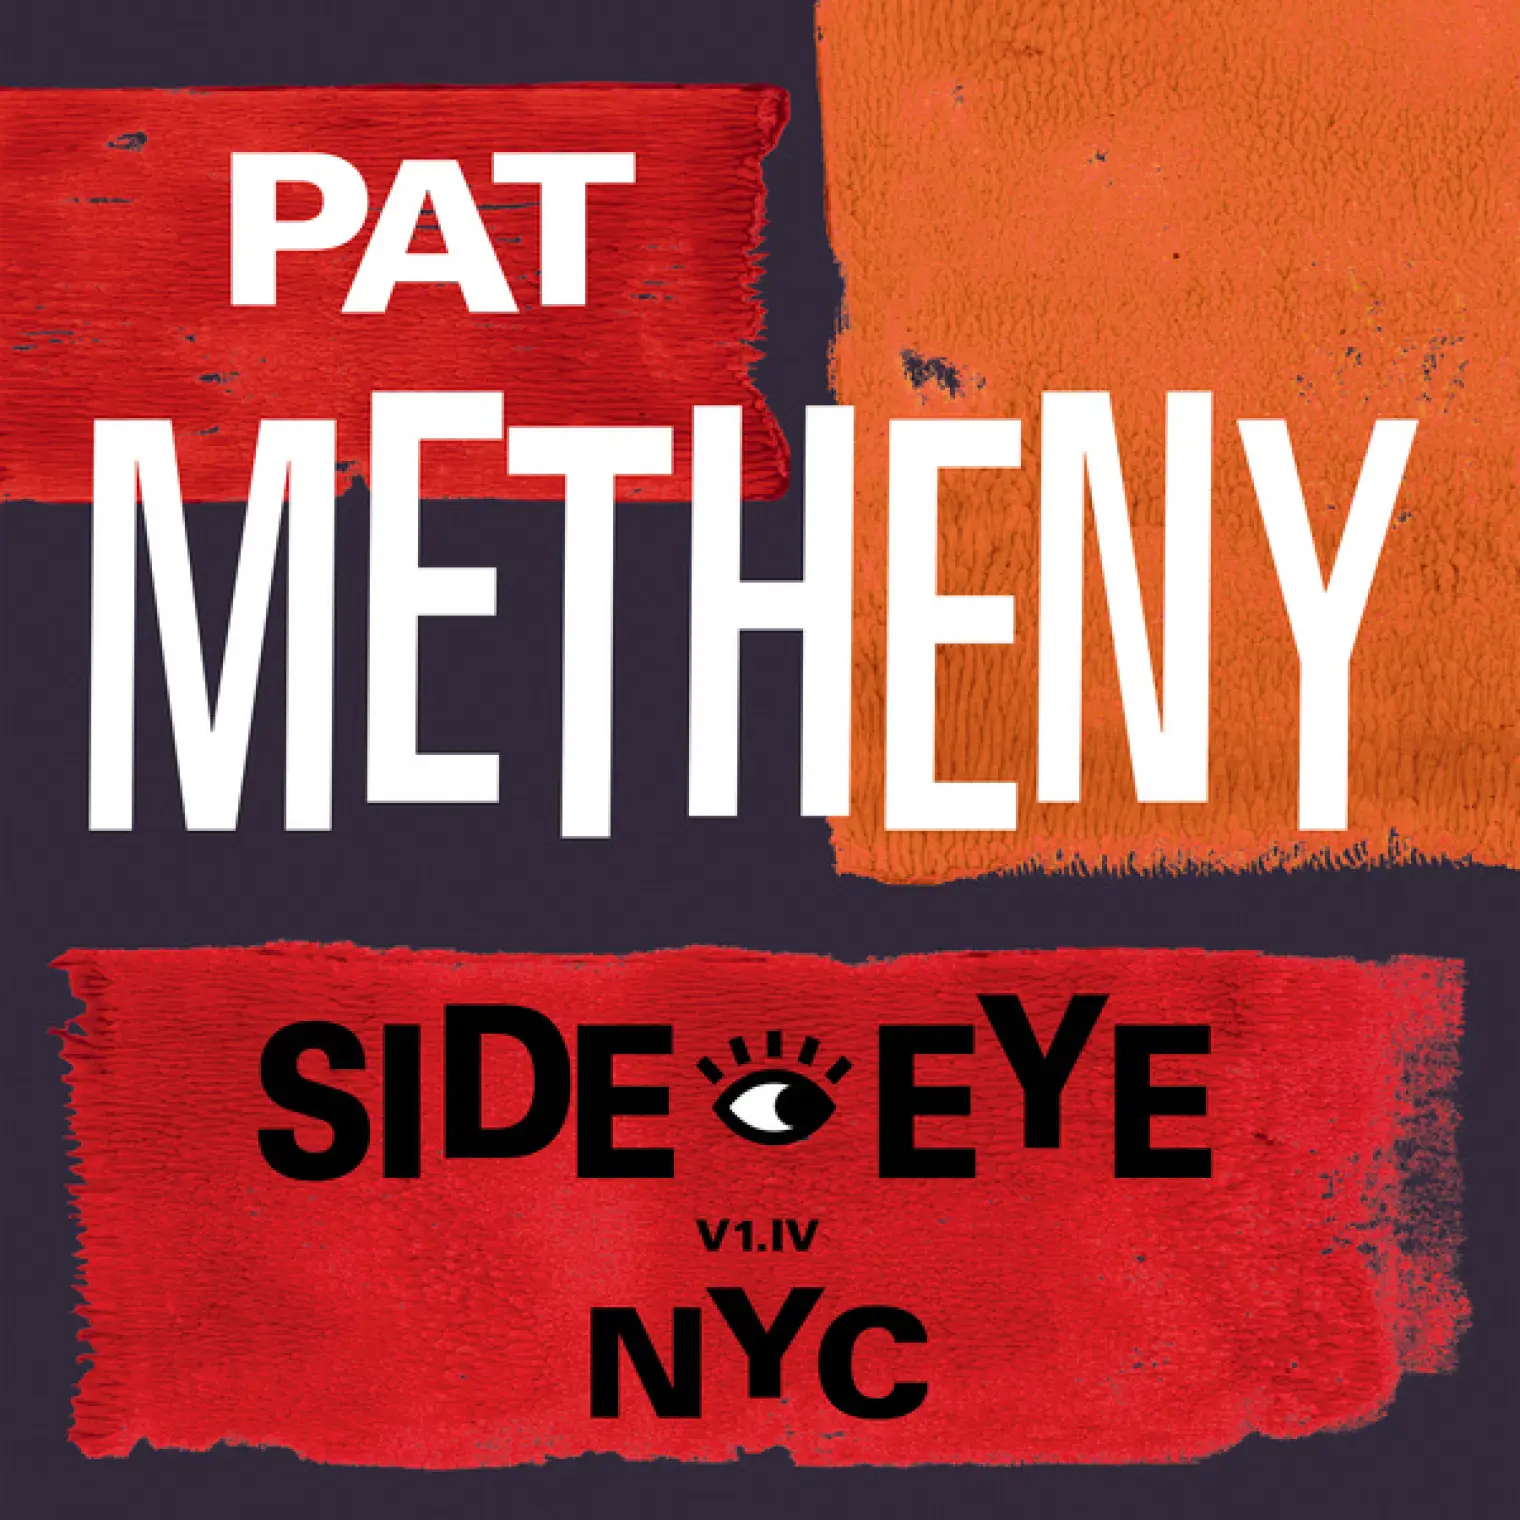 Side-Eye NYC (V1.IV) -  Pat Metheny 